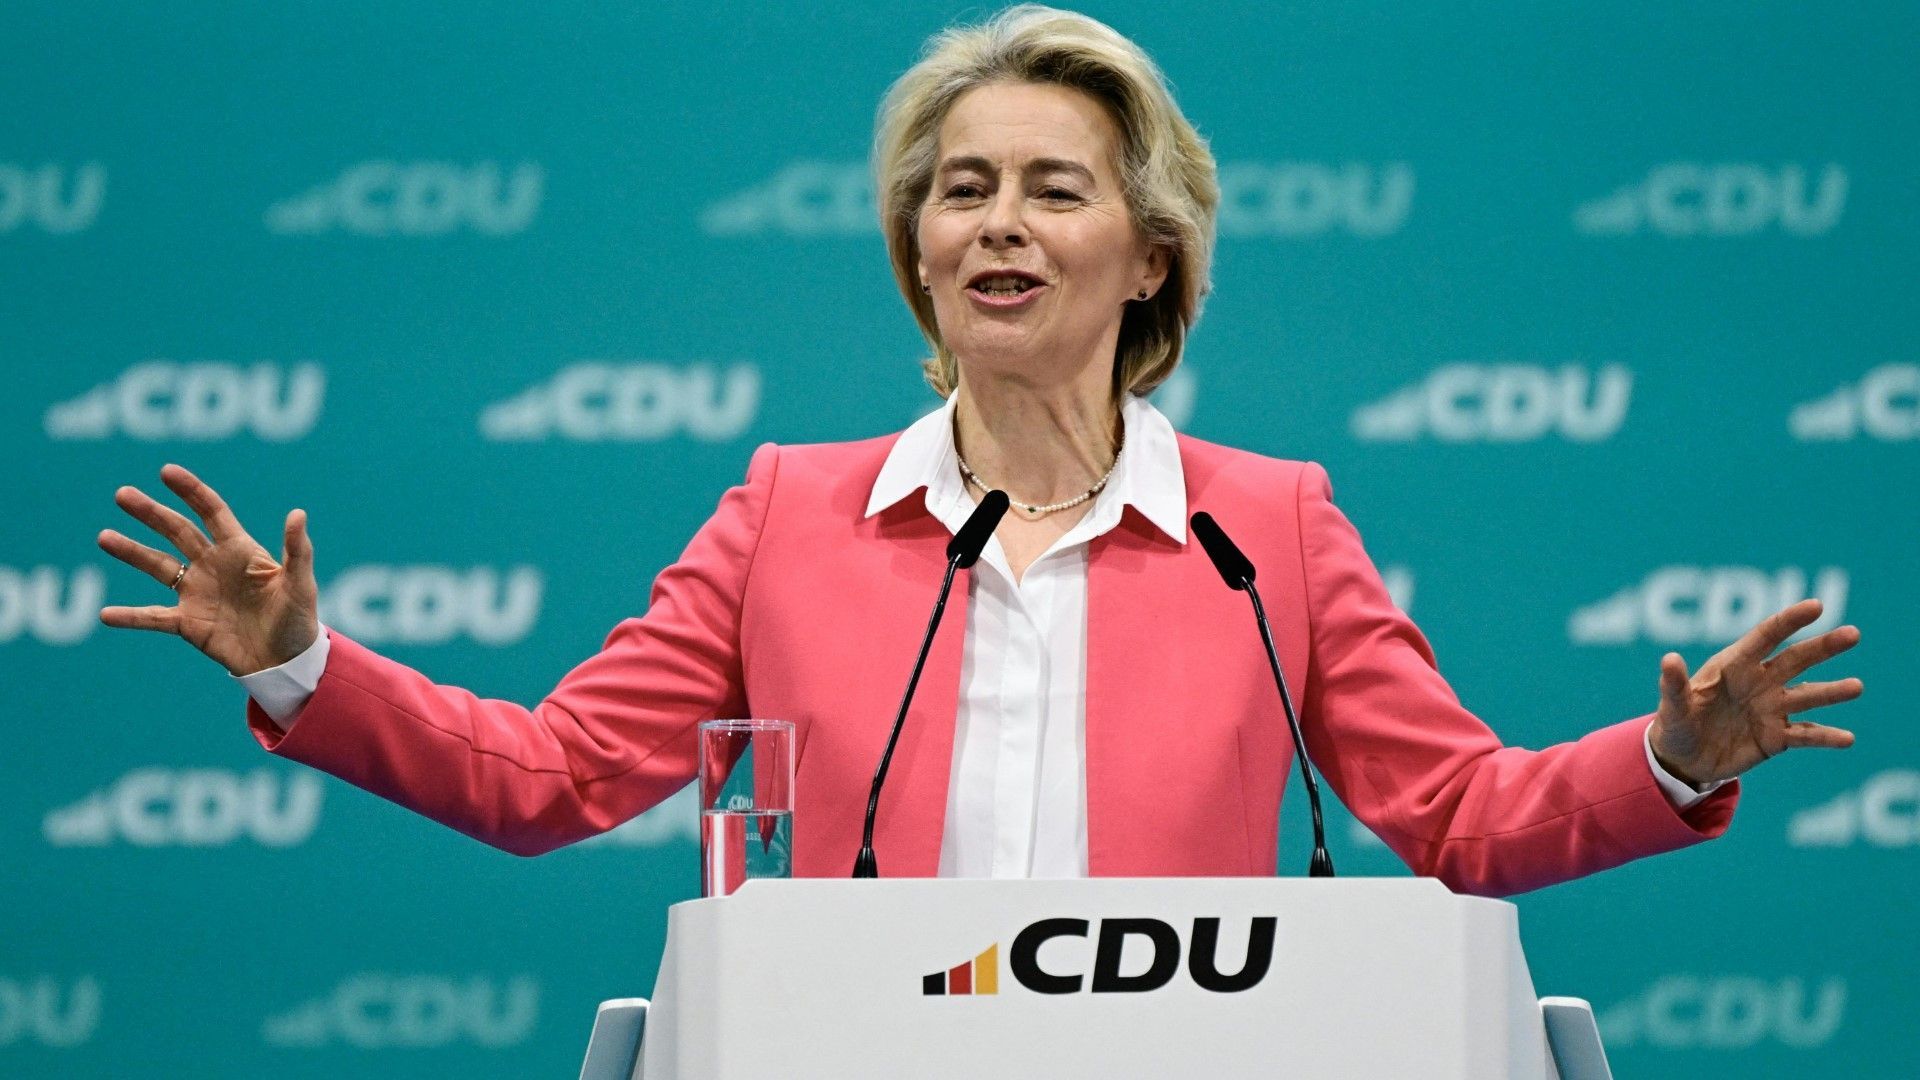 "Sie sollen sich schämen!": Von der Leyen warnt vor AfD auf CDU-Parteitag